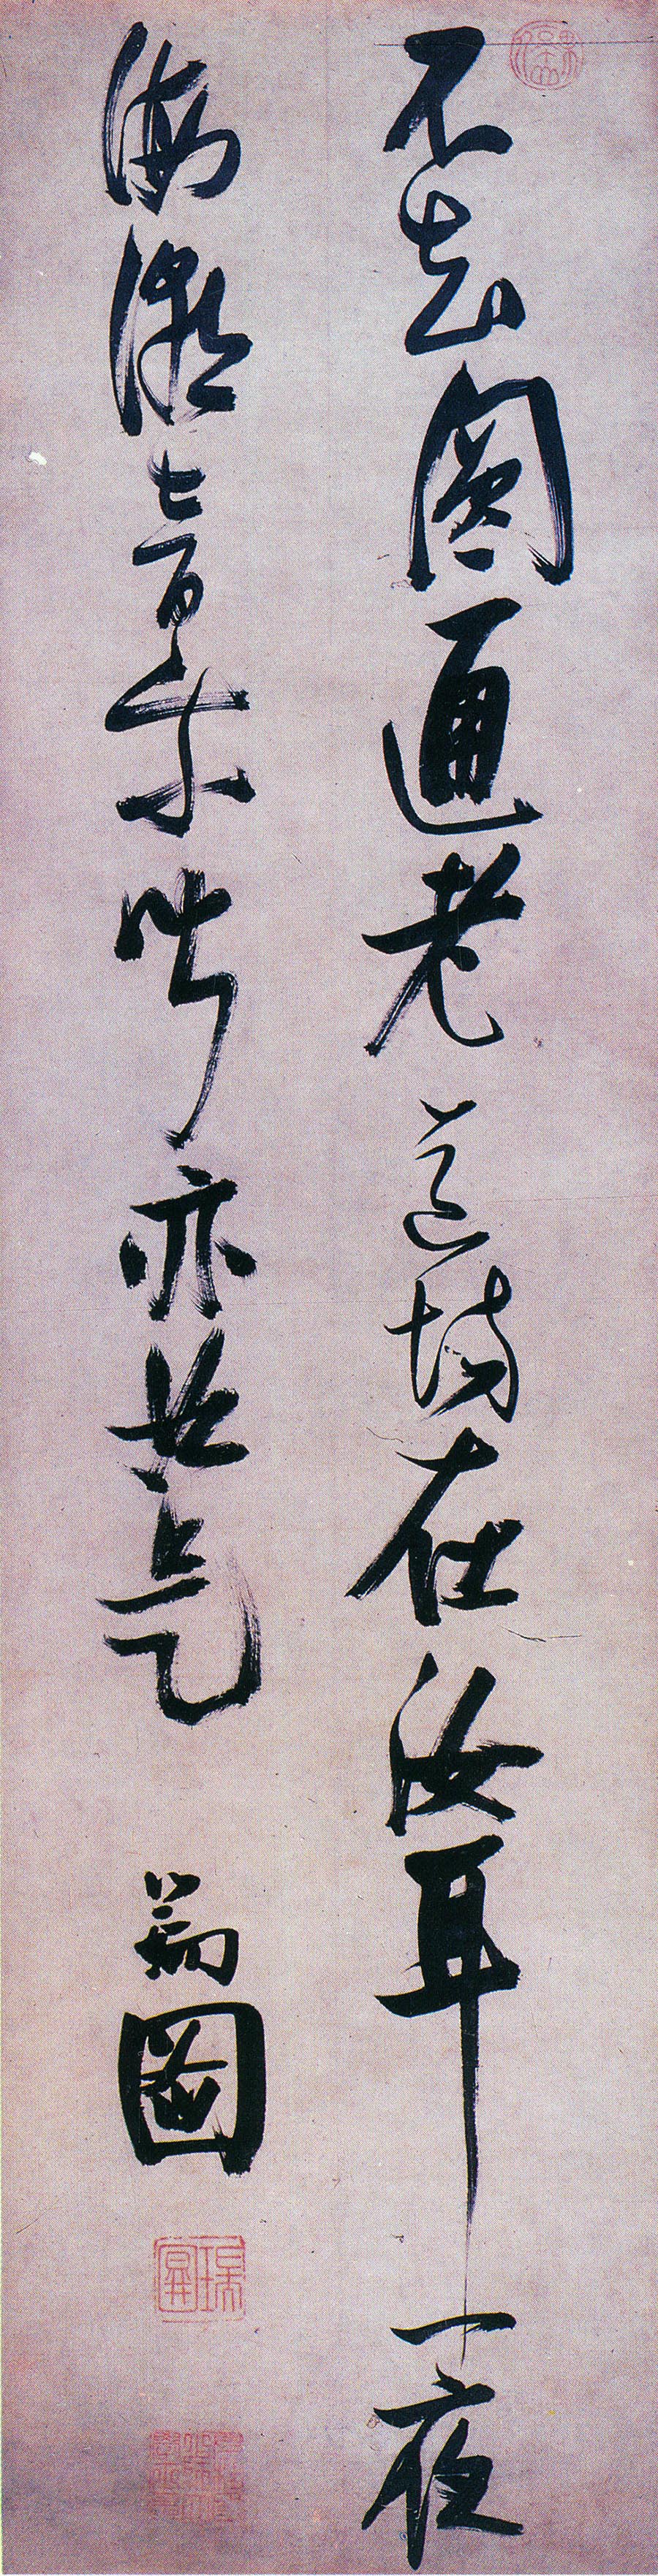 张瑞图《行书不知圆通老诗》轴-北京故宫博物院藏(图1)